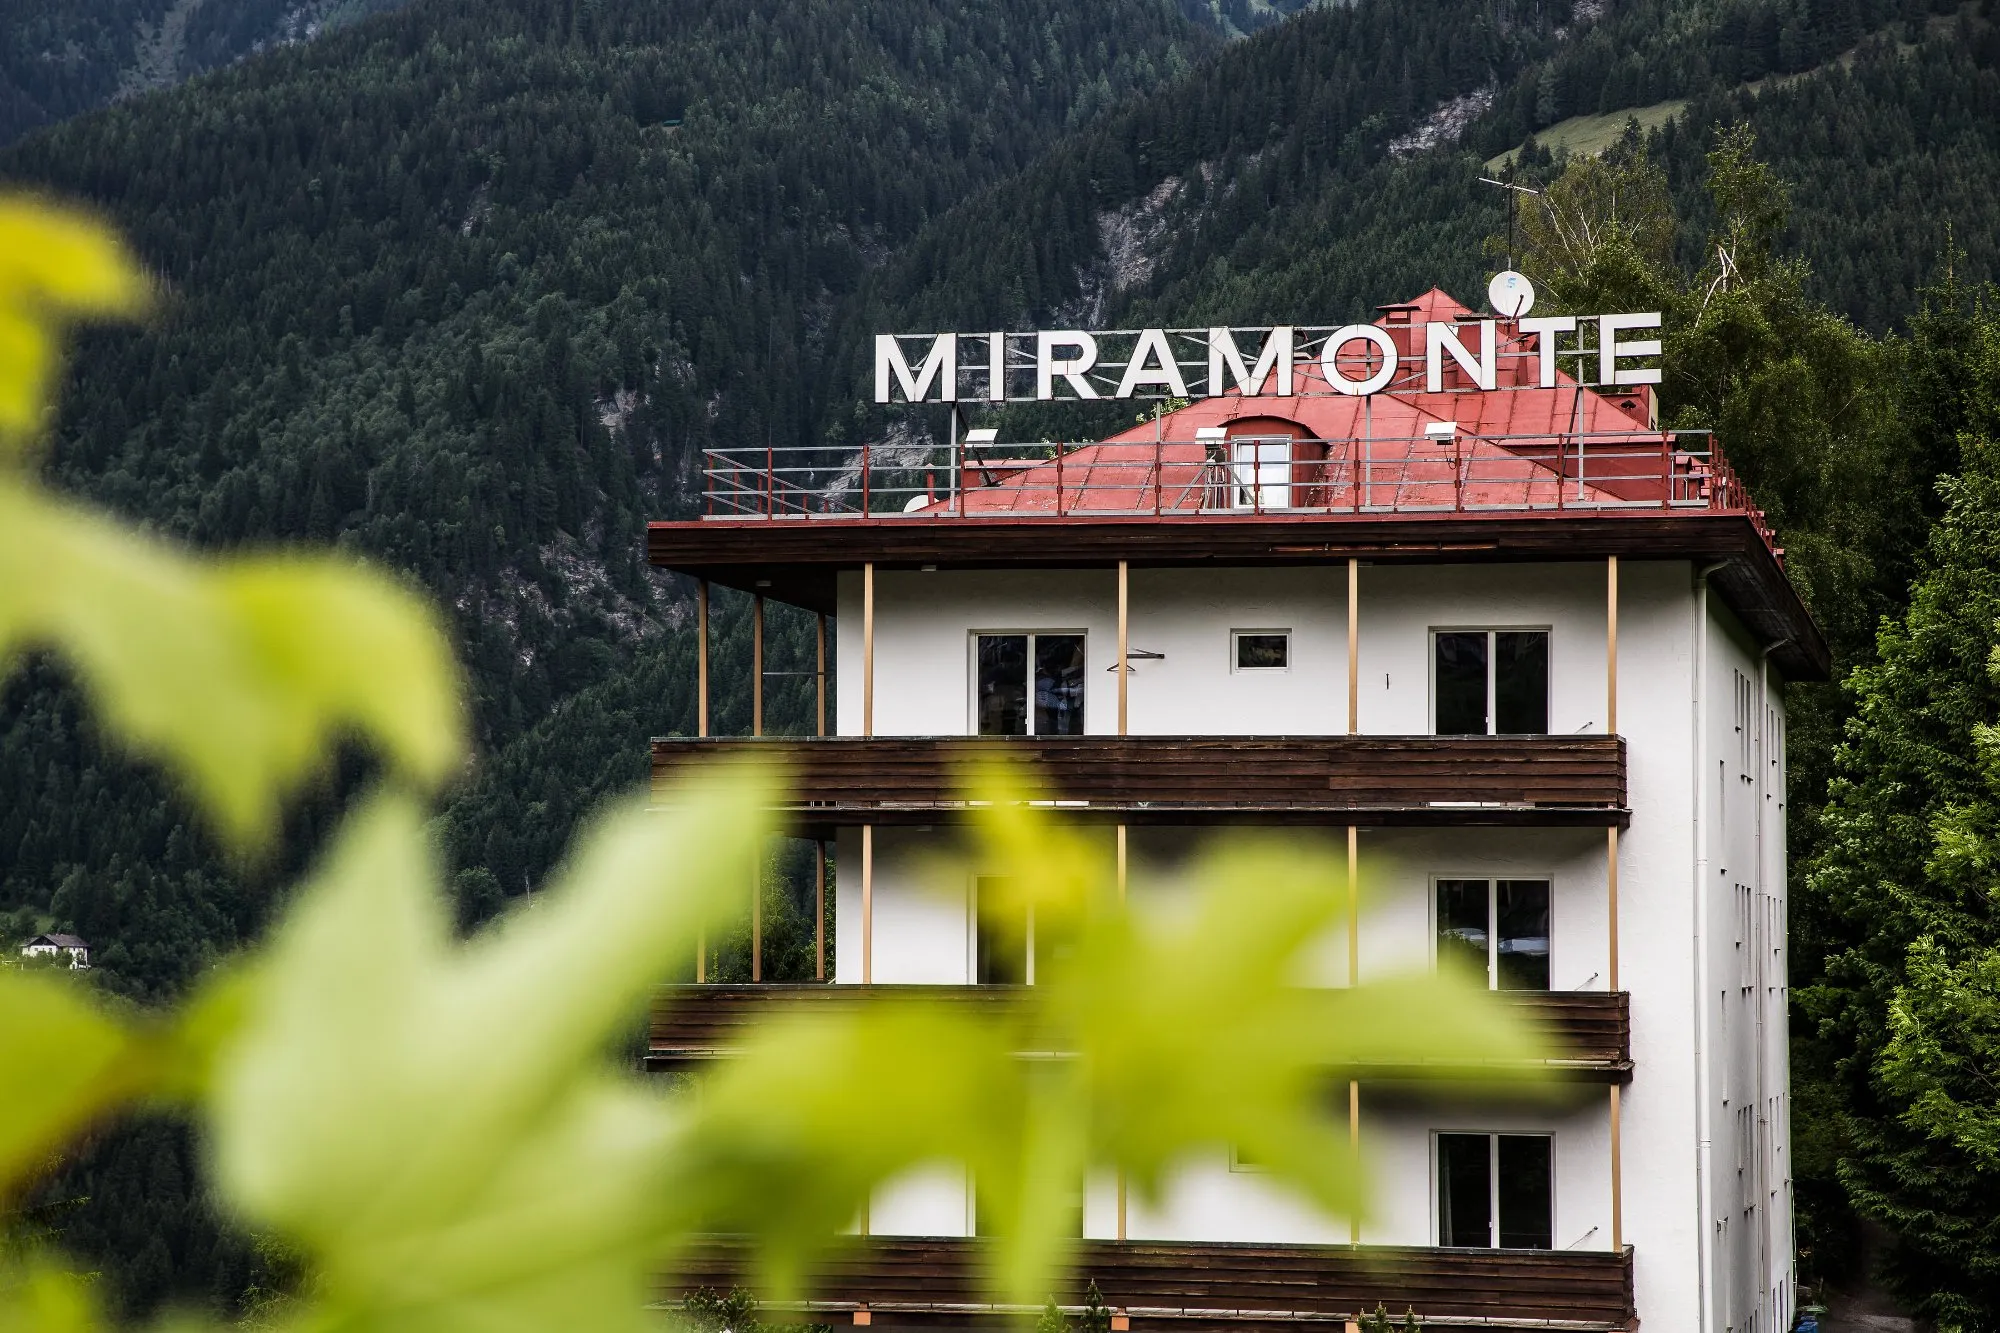 Building hotel Miramonte Bad Gastein